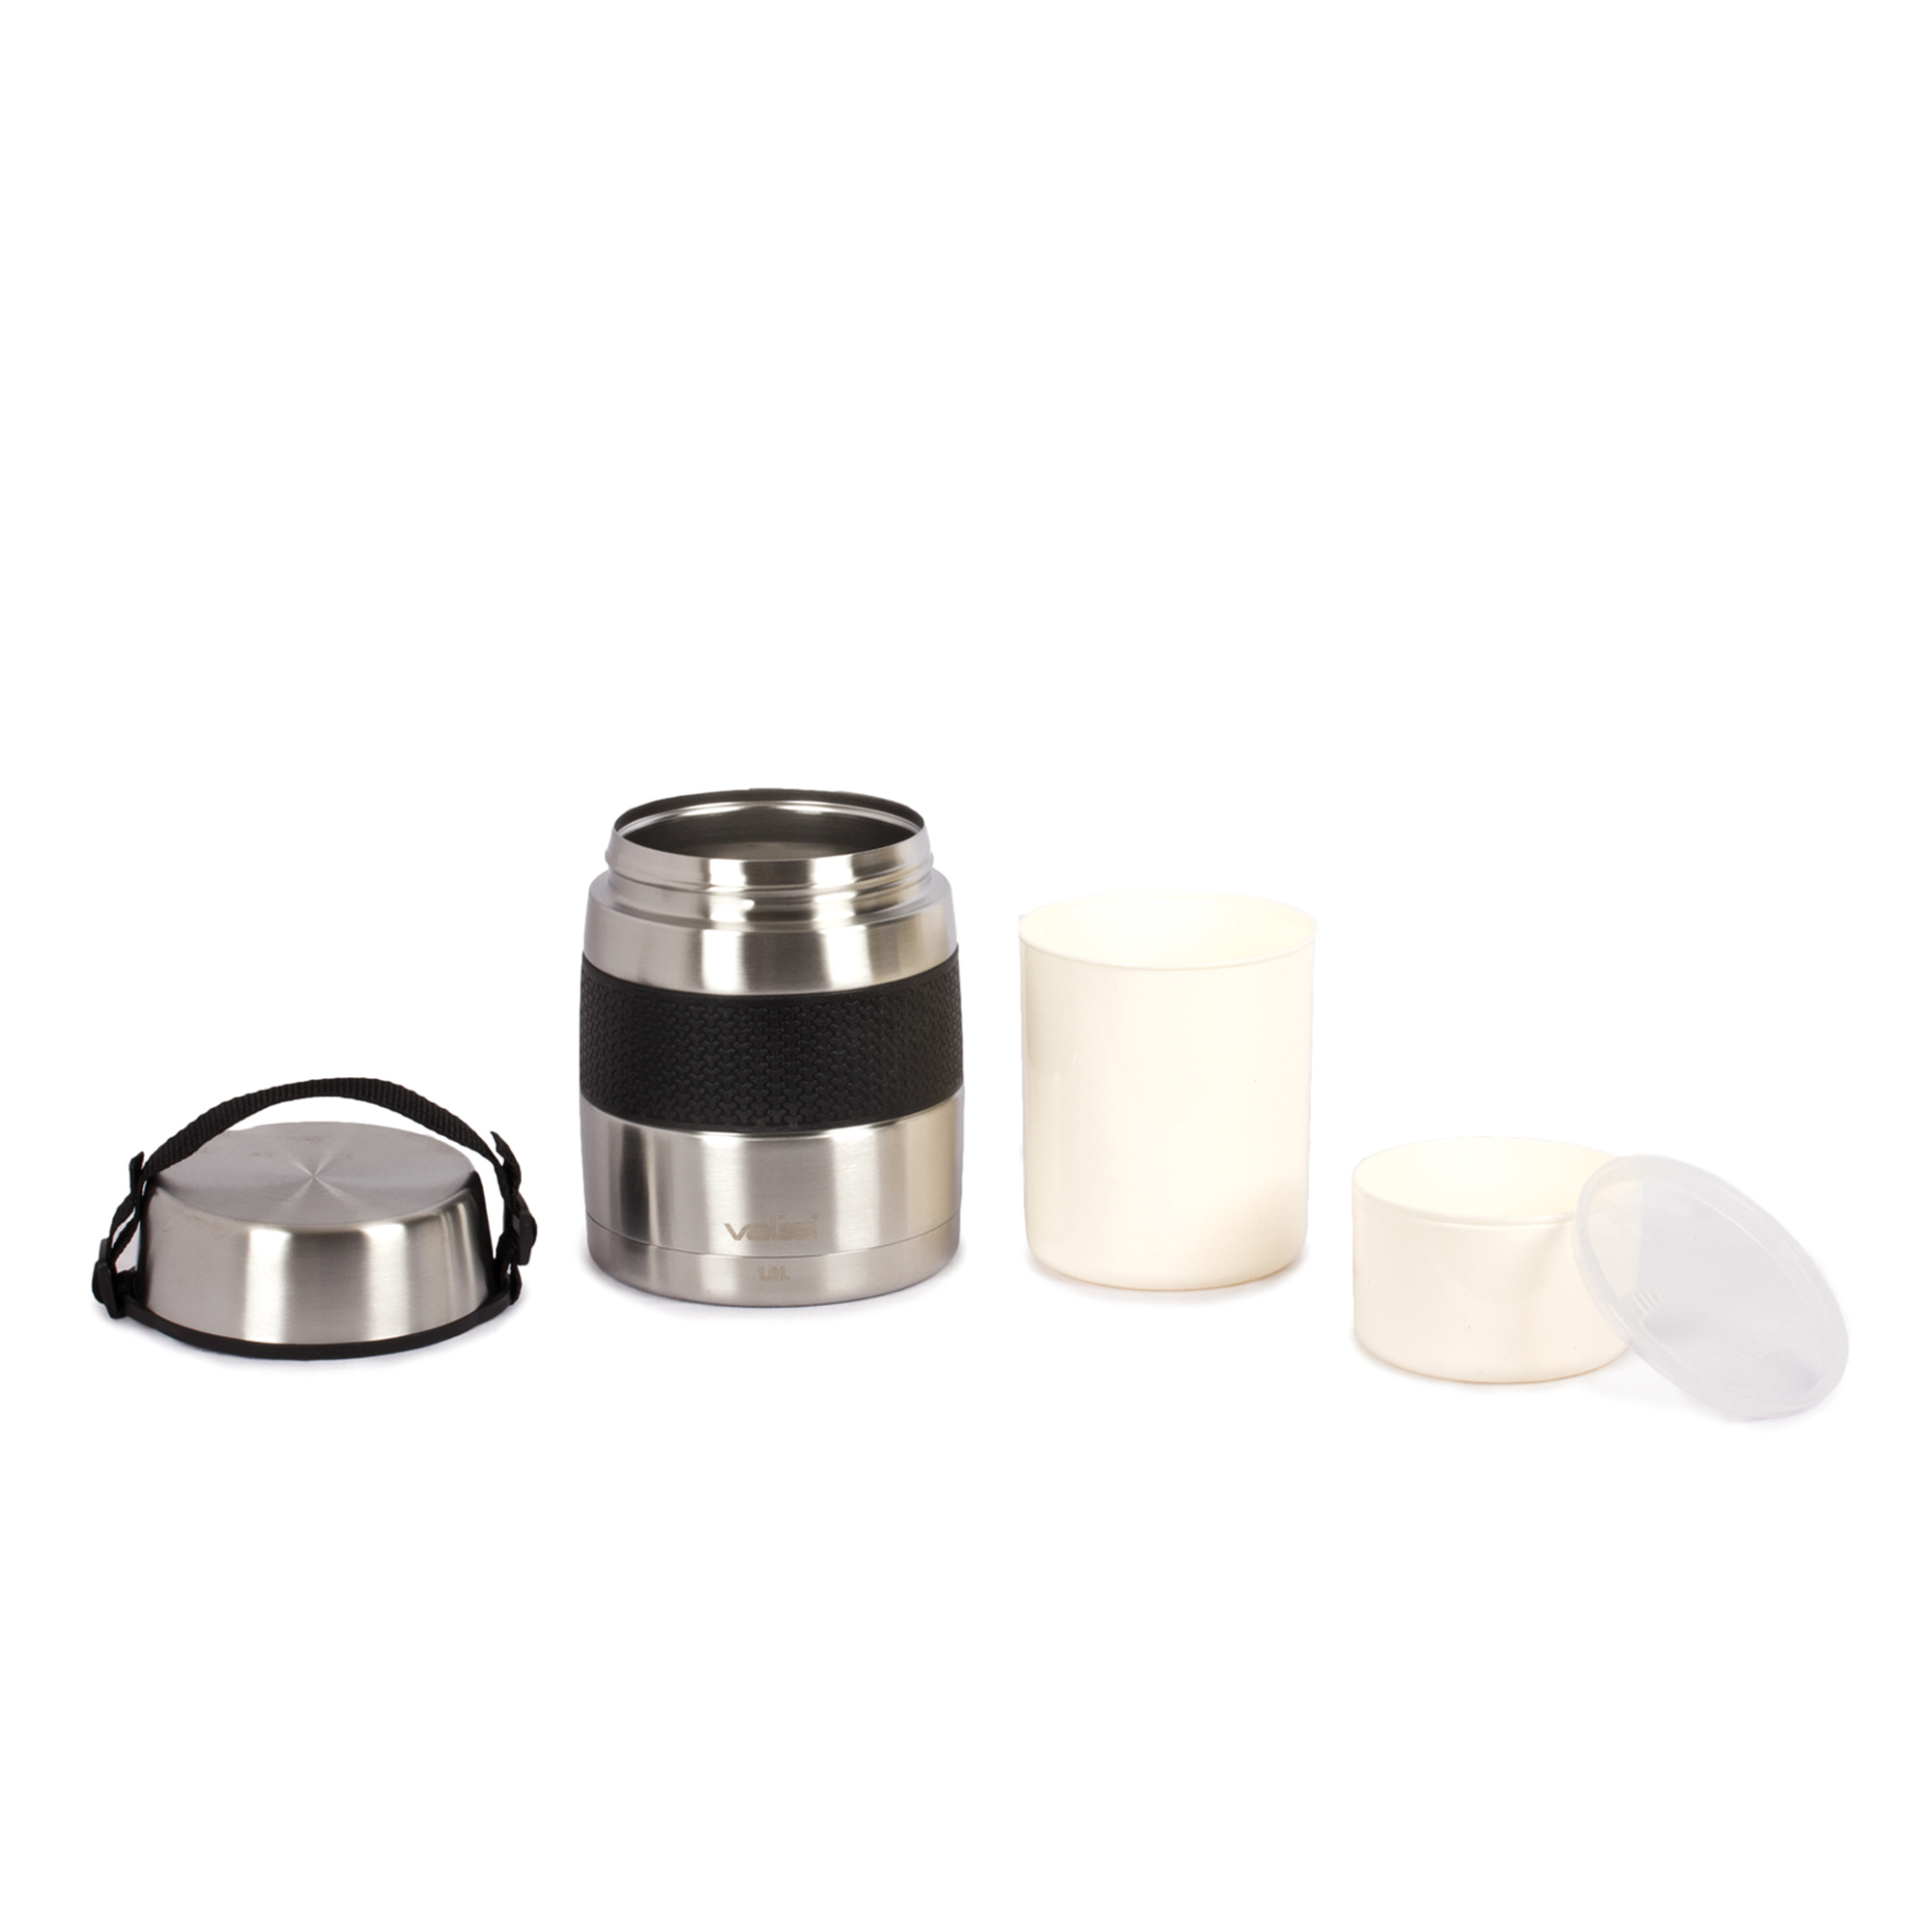 Visuel de Boîte à repas isotherme, 1l, inox 18/10 - Valira Cette boîte repas au design moderne est compact et solie, elle contient une double paroi en acier inoxydable 18/10. Pratique : elle est équipée de 2 récipients amovibles sans BPA (0.7l et 0.3 l). Conserve le froid ou le chaud jusqu'à 6 heures.